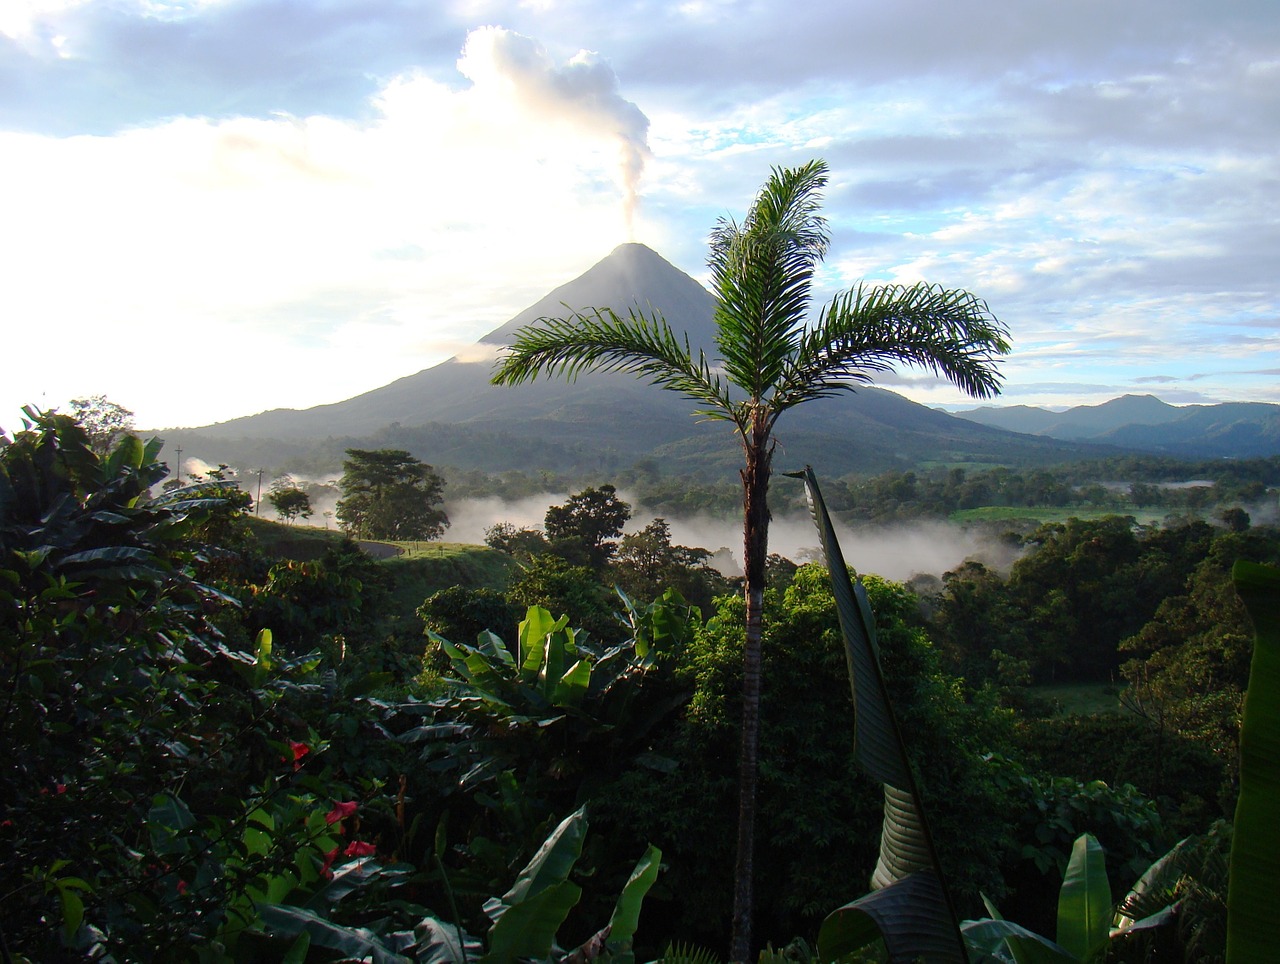 Vue lointaine d'un volcan en éruption au Costa Rica: au premier plan, un palmier surplombe une verdure composée de palmes. Au loin, la canopée est recouverte de brume.  A l'arrière-plan, un volcan sort de la forêt et crache une fumée blanche sur un ciel bleu